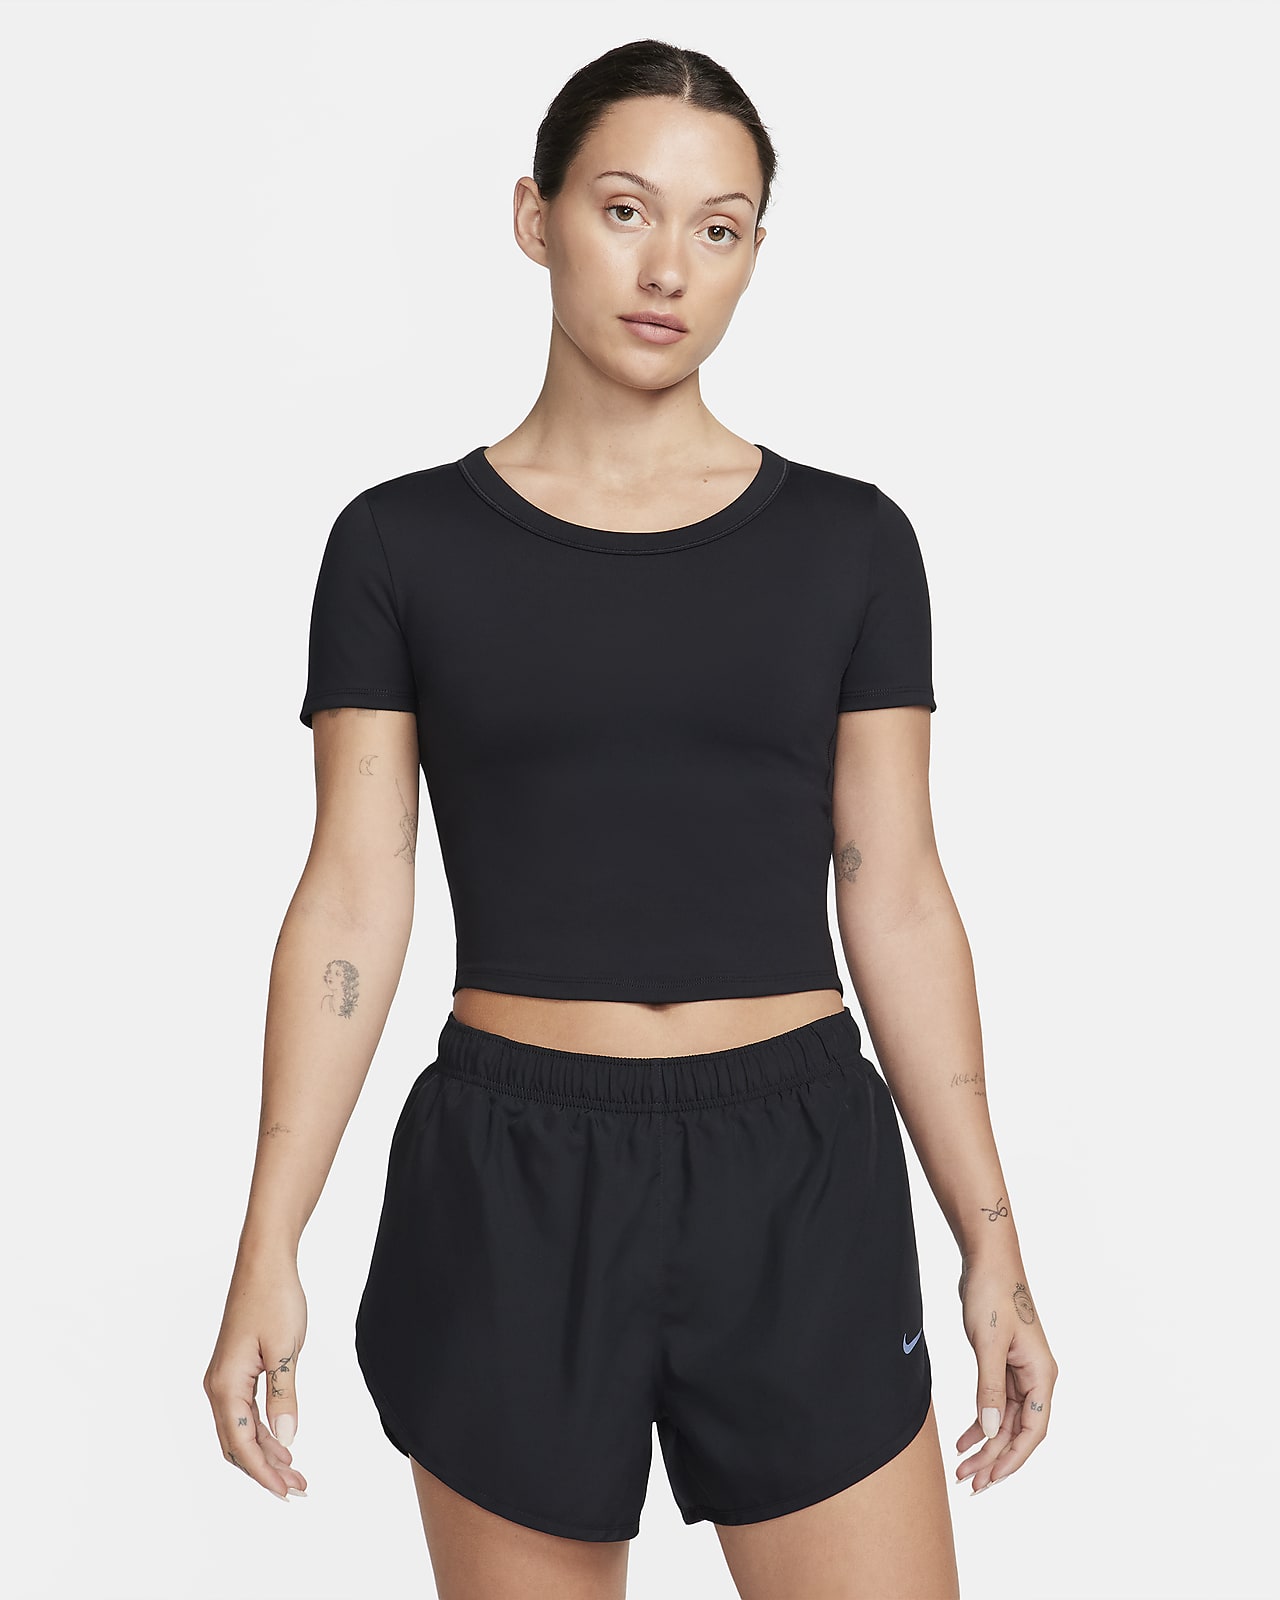 Dámské zkrácené tričko Nike One Fitted Dri-FIT s krátkým rukávem